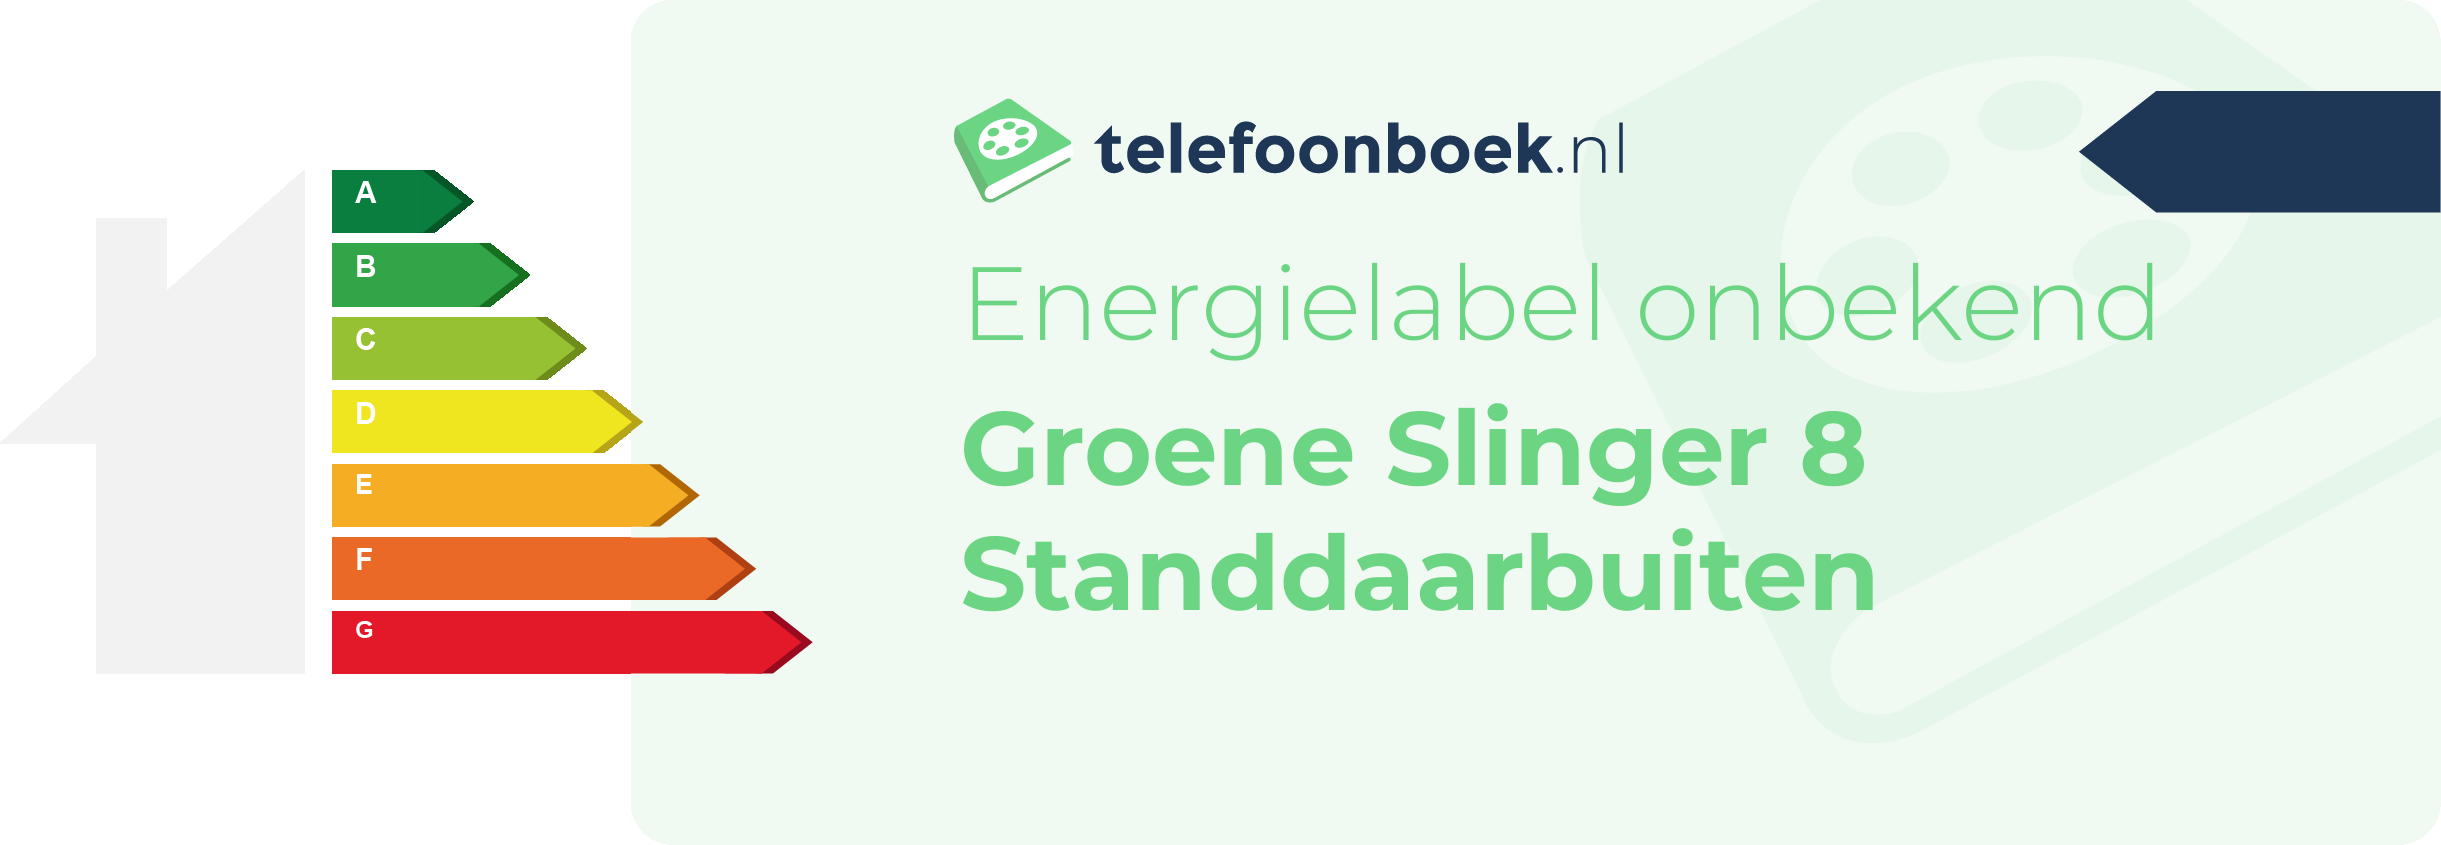 Energielabel Groene Slinger 8 Standdaarbuiten